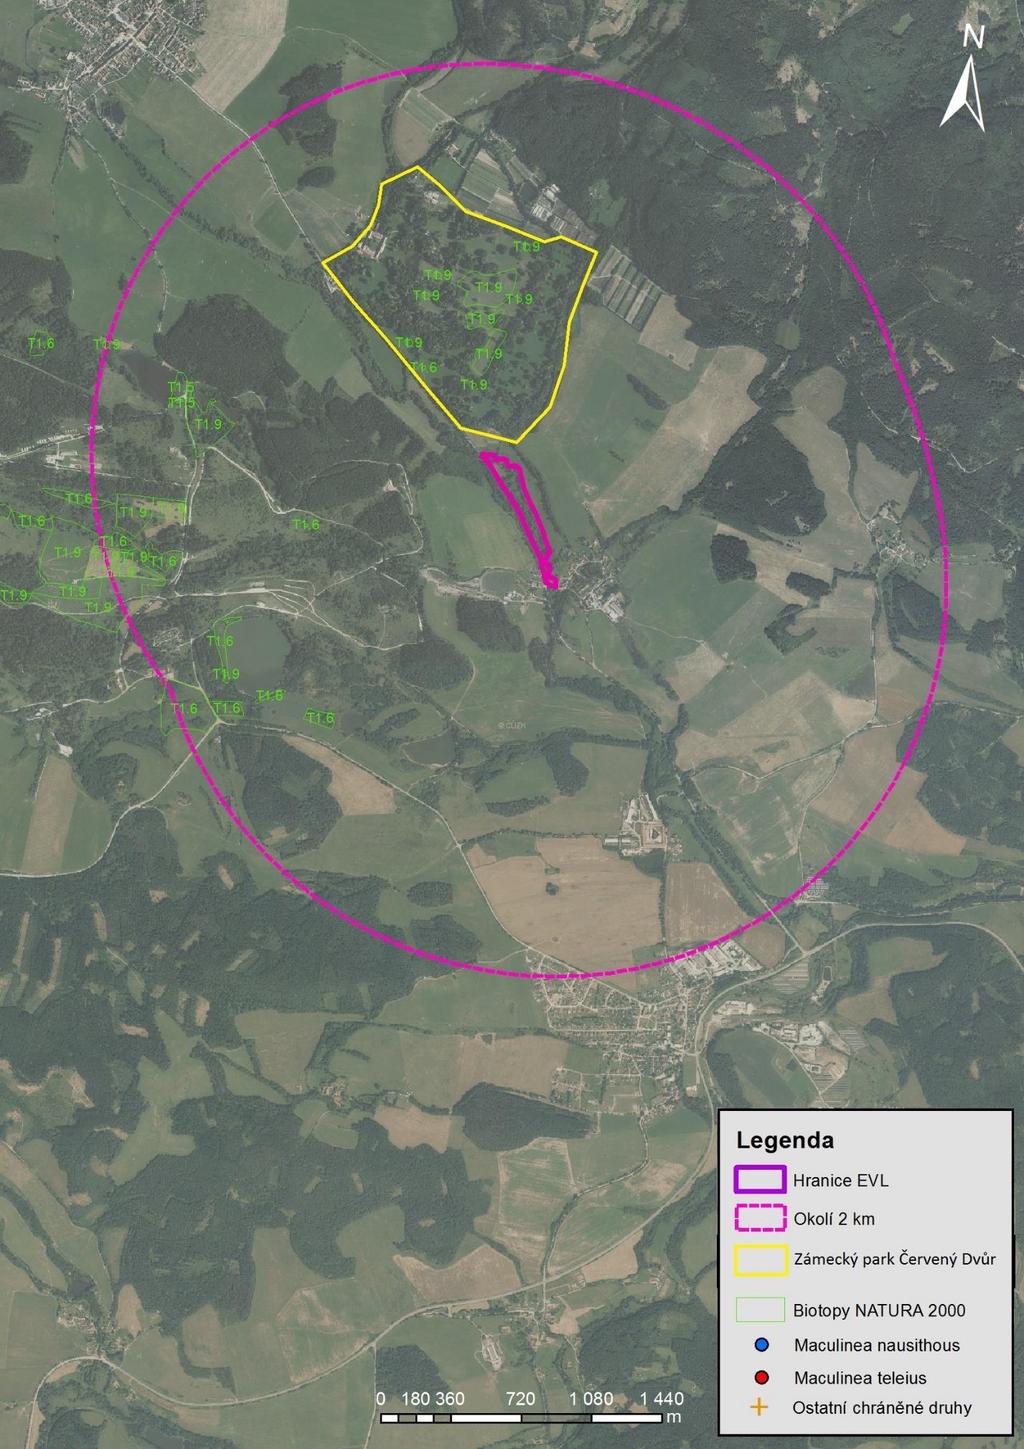 Mapa 12 PP Meandry Chvalšinského potoka a okolí 2 km. Znázorněna je hranice PP, okolí 2 km, naturové biotopy T1.4, T1.5, T1.6, T1.